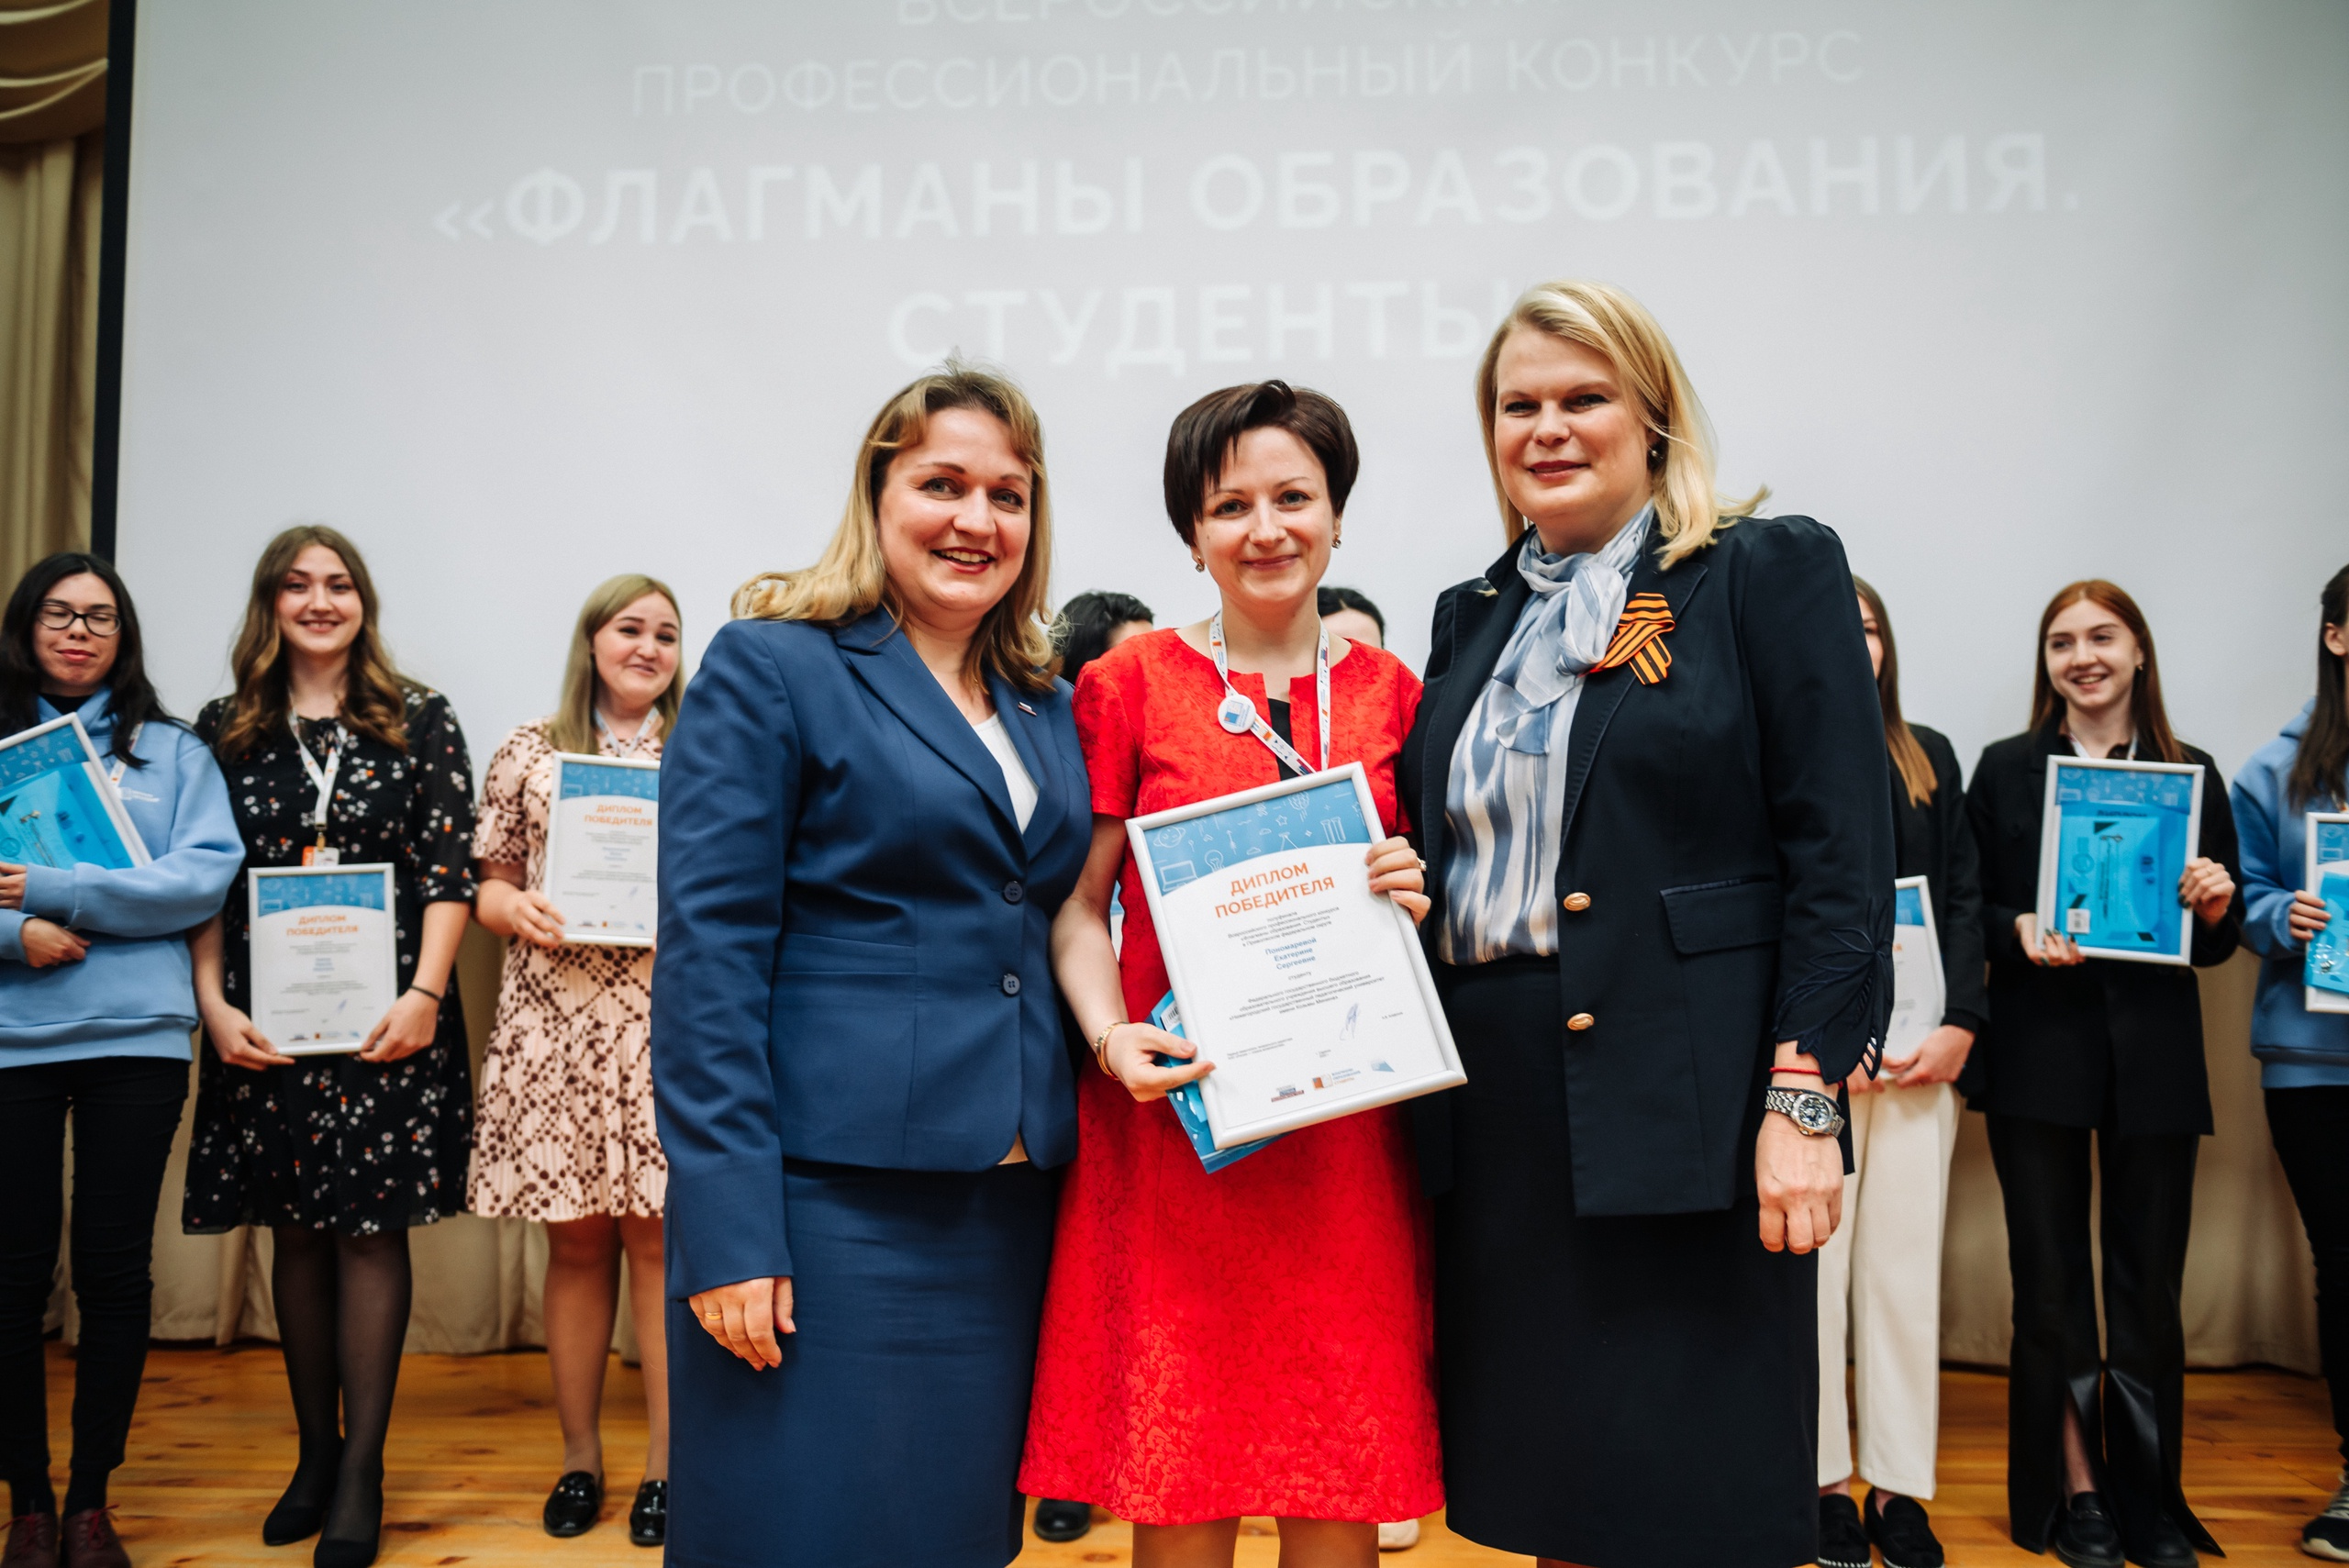 Студентка Мининского университета стала победителем Всероссийского конкурса «Флагманы образования»